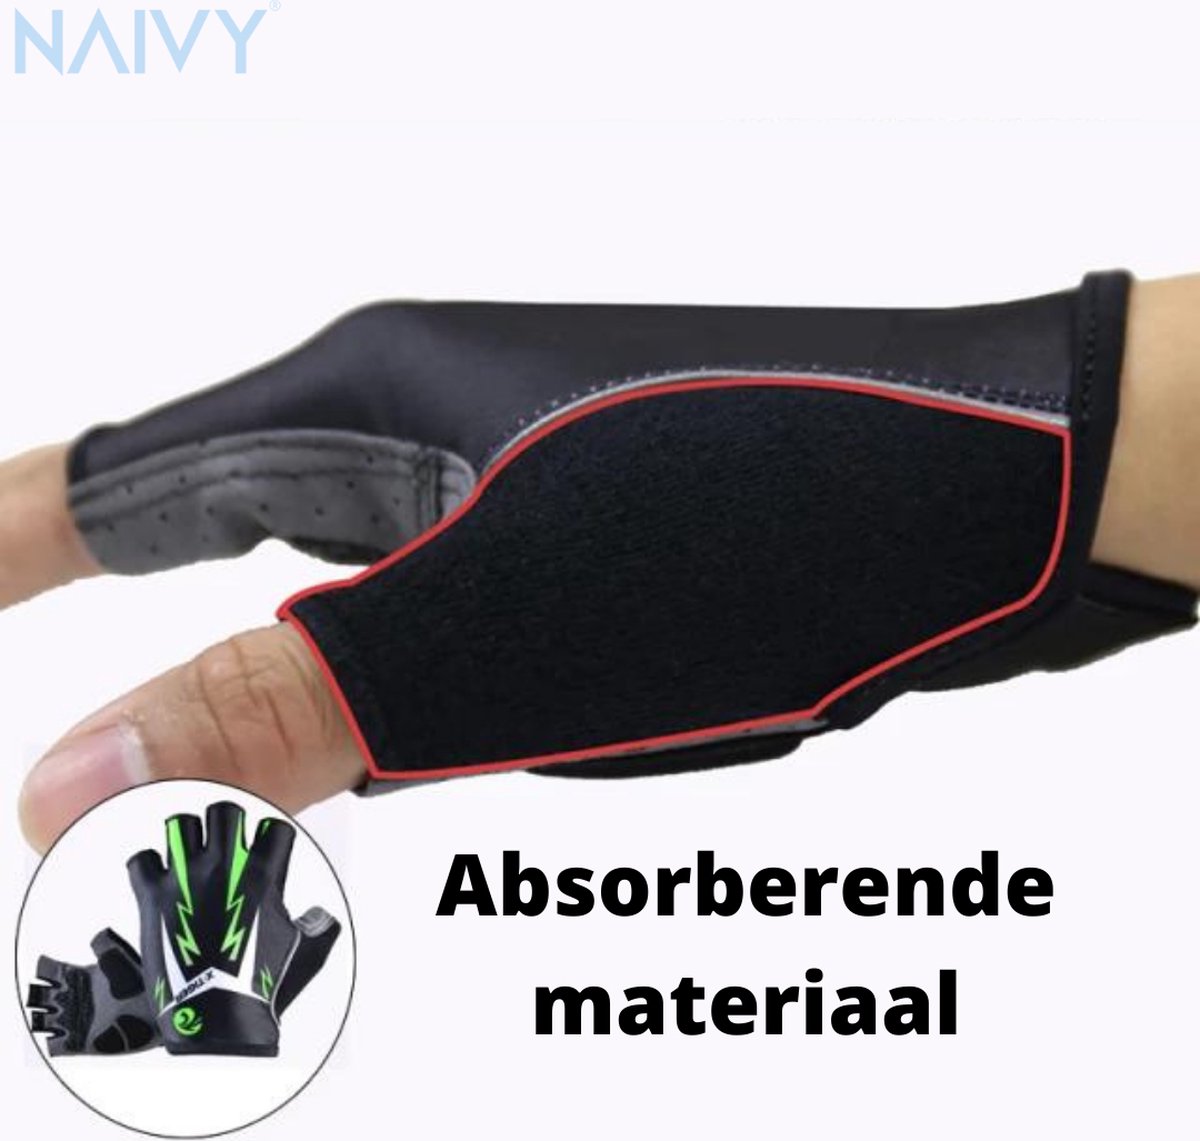 Naivy® Fietshandschoenen (Groen) ||3D Gel Pad || Half Vinger || Reflecterende Fietsen Handschoenen || Zomer Sport || Shockproof Bike Handschoenen